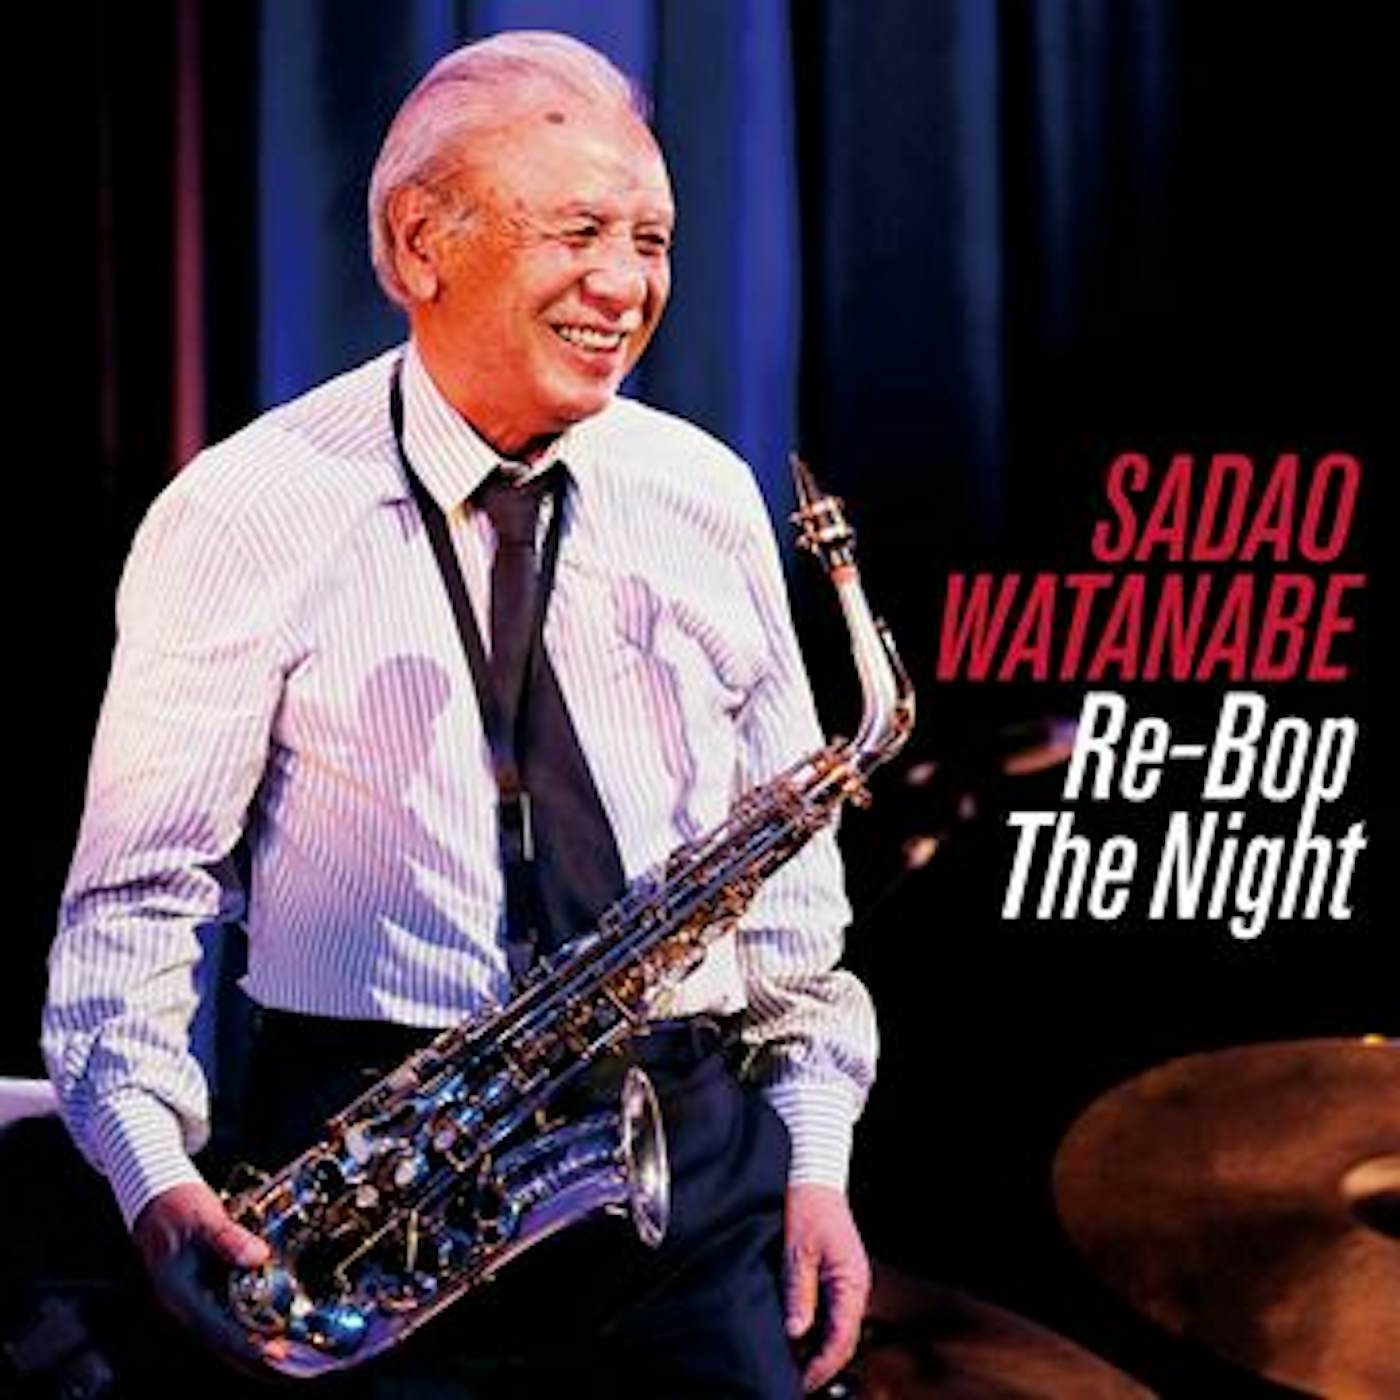 Sadao Watanabe RE-BOP THE NIGHT CD